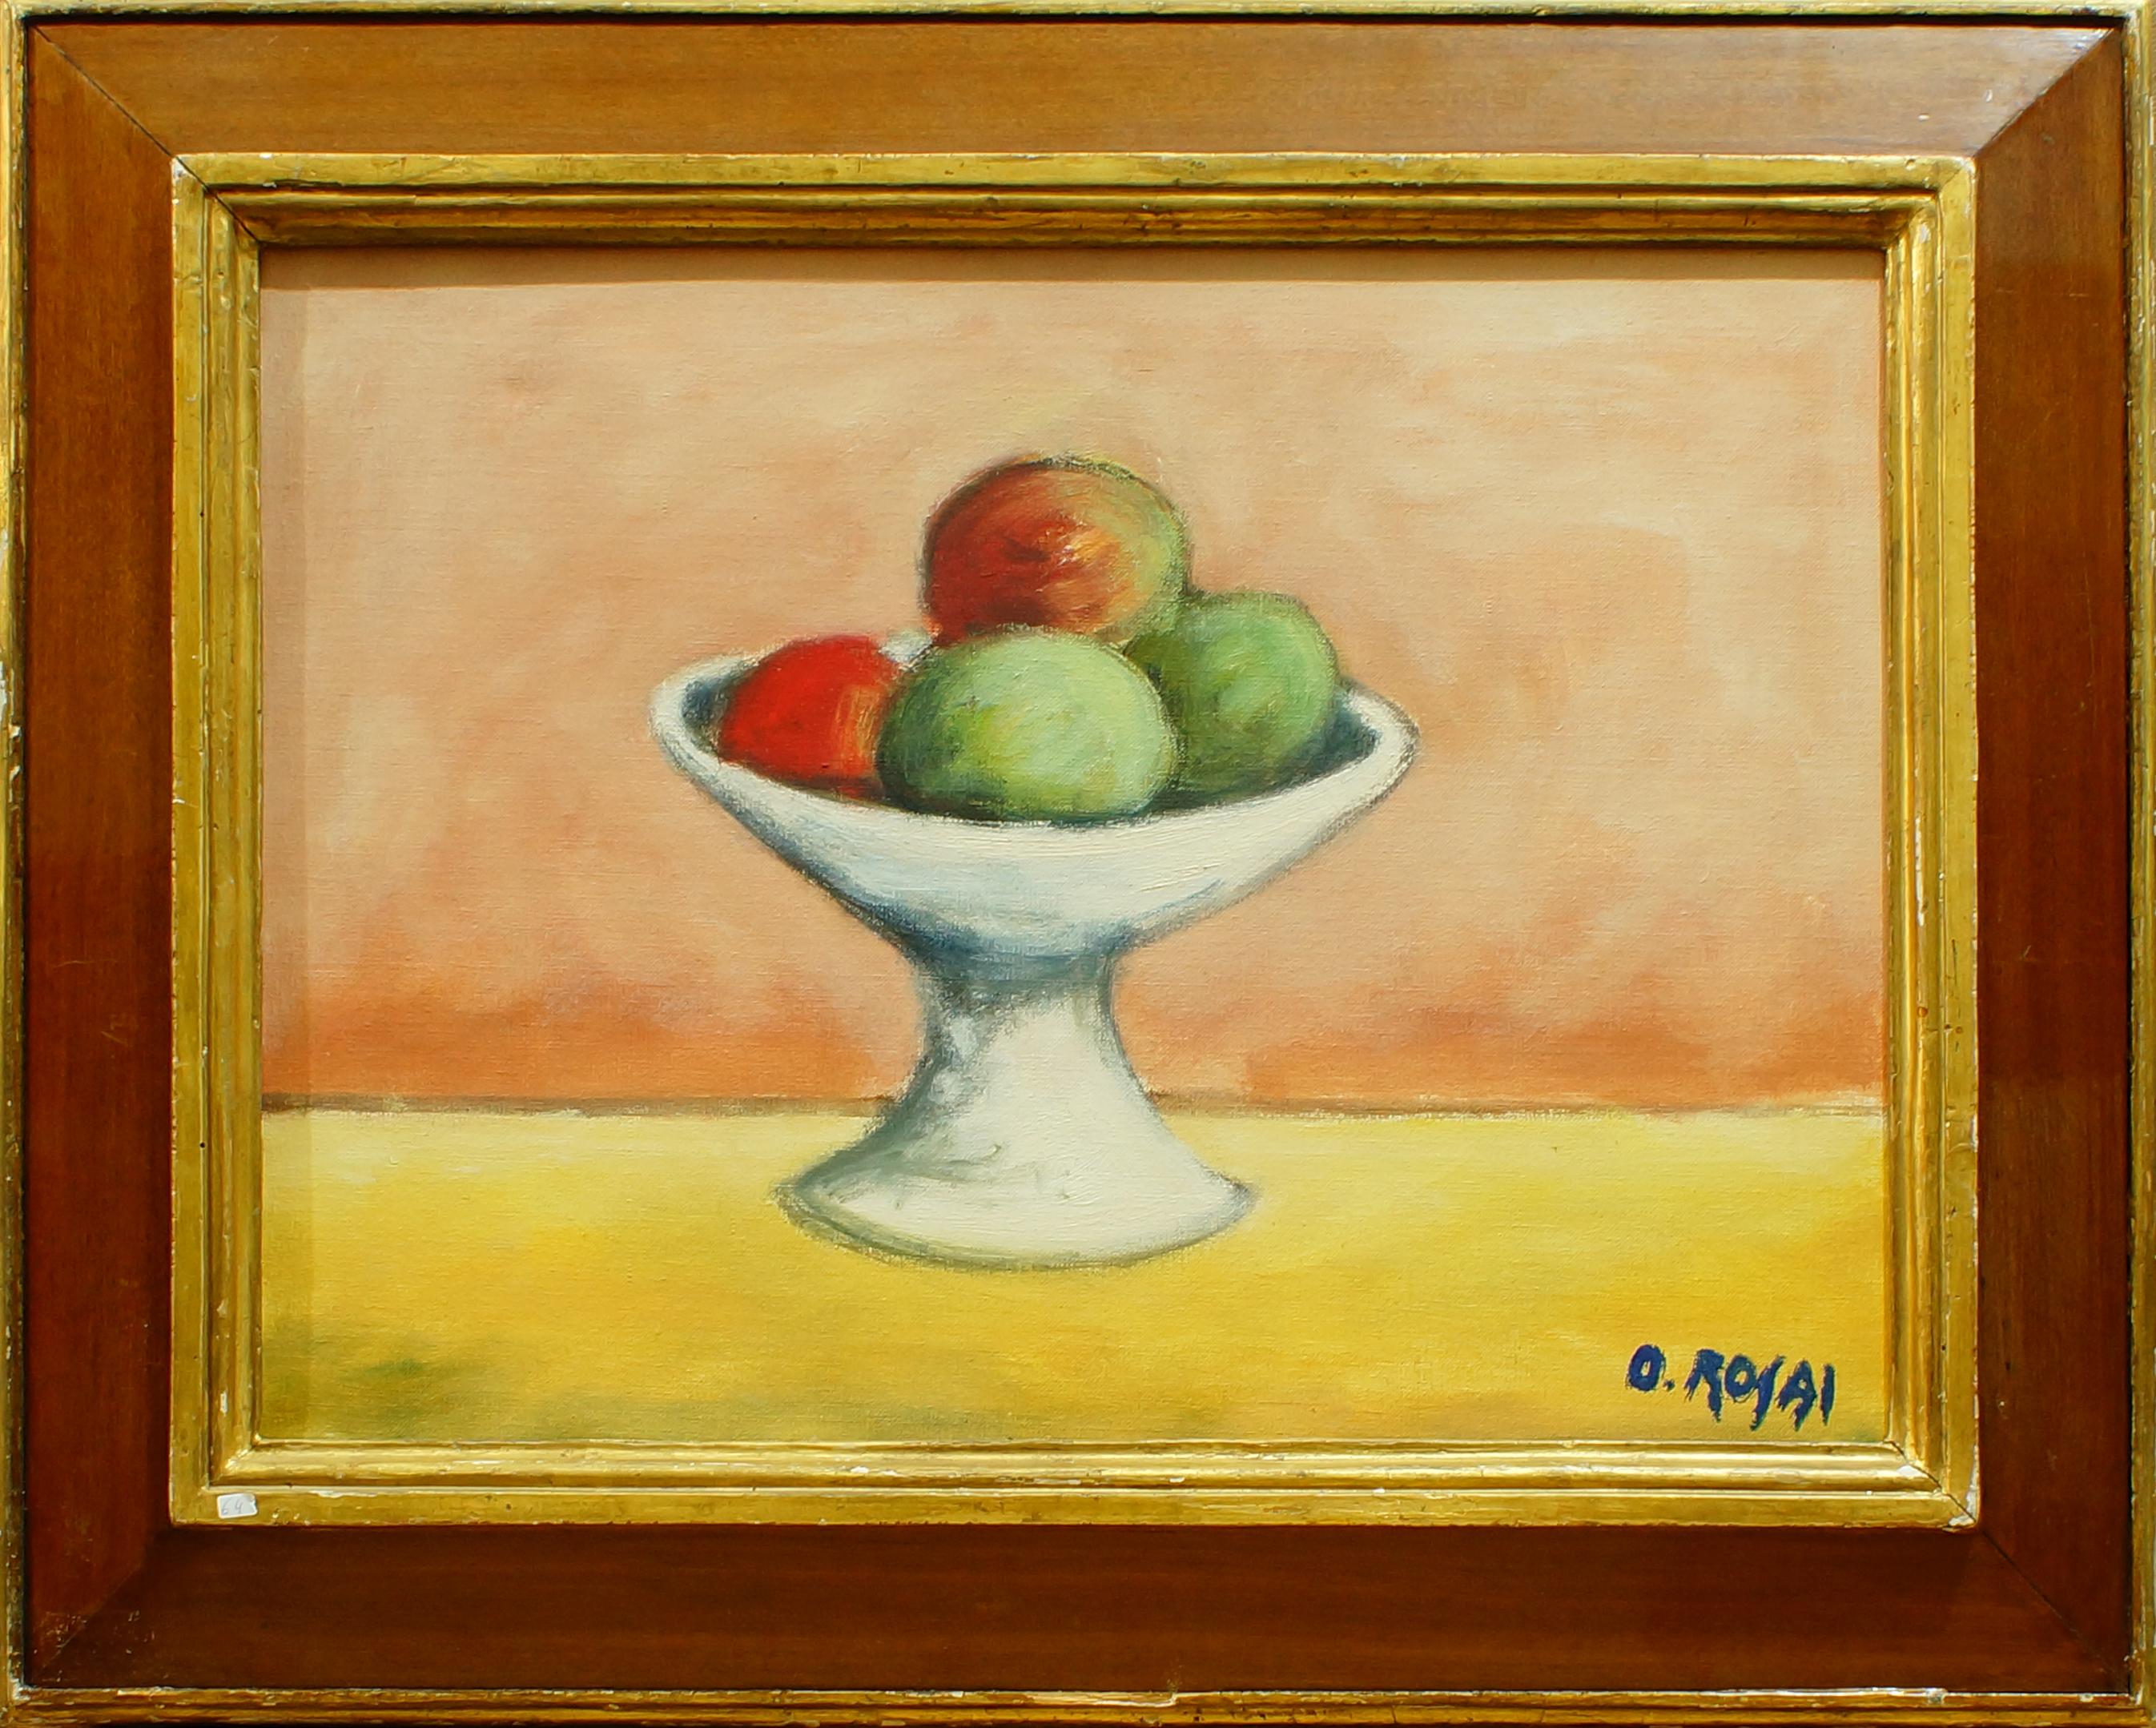 Stillleben mit Früchten – Öl auf Leinwand von Ottone Rosai – 1950 ca.